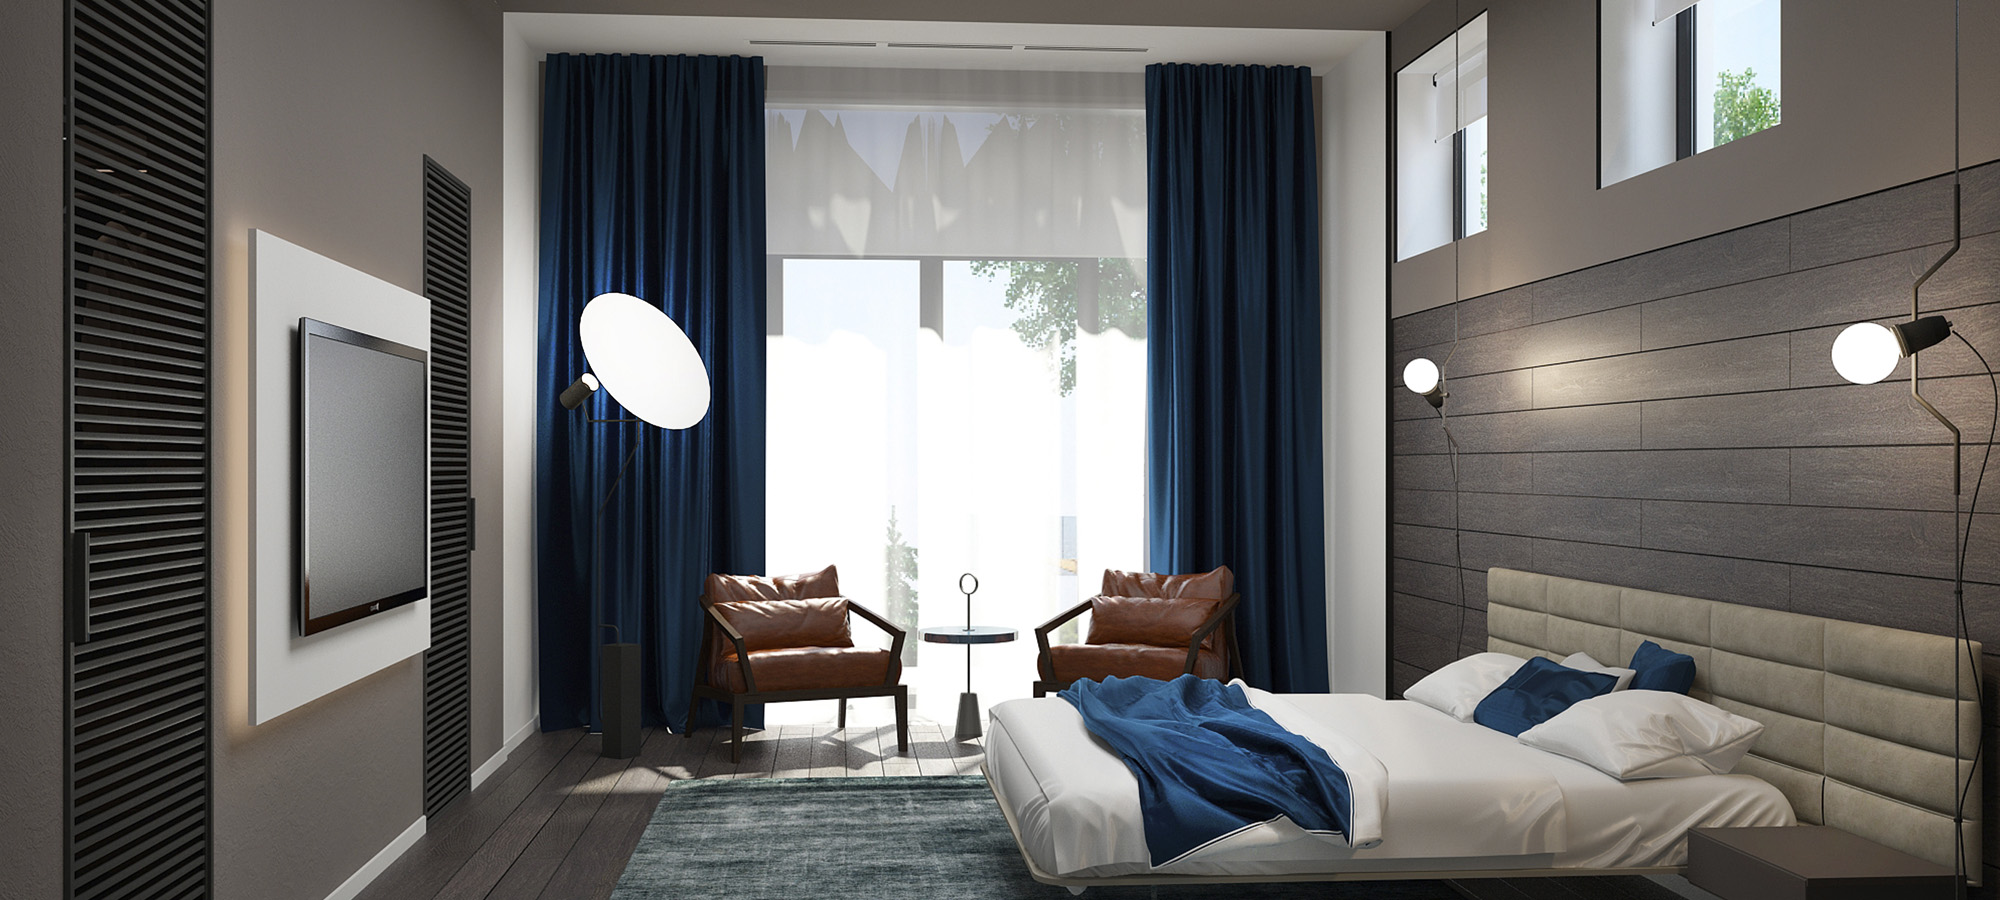 Дизайн объекта - Частная вилла (спальня, бильярдная ), портфолио от студии АртСтройДом